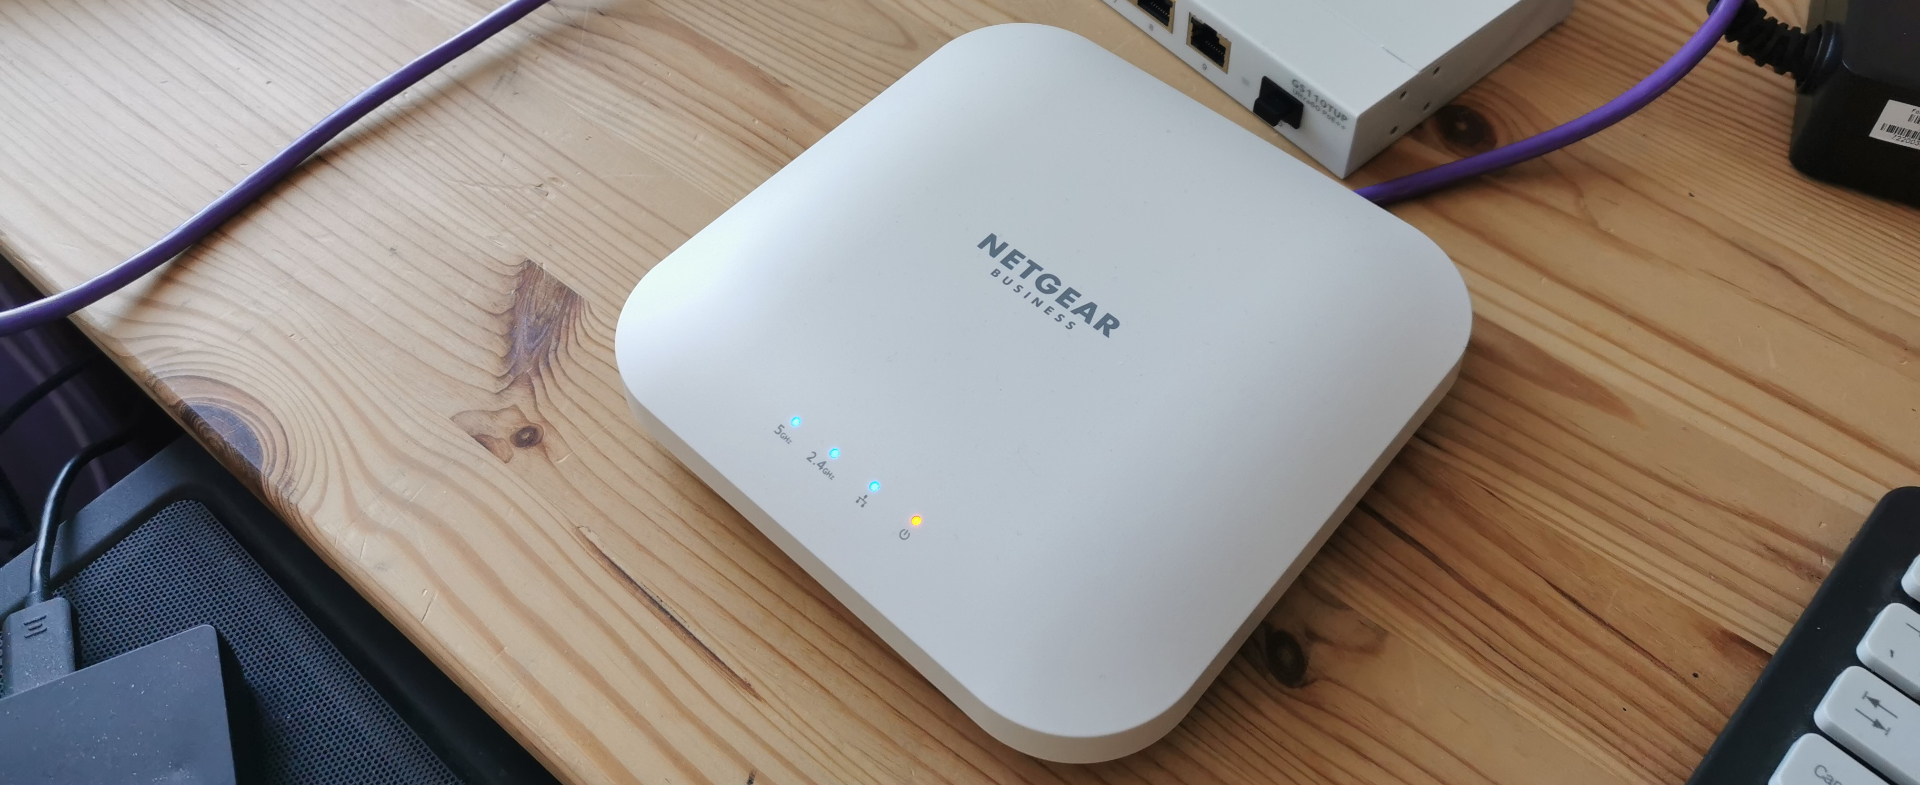 Netgear WAX214 WiFi 6 PoE+ Access Point review